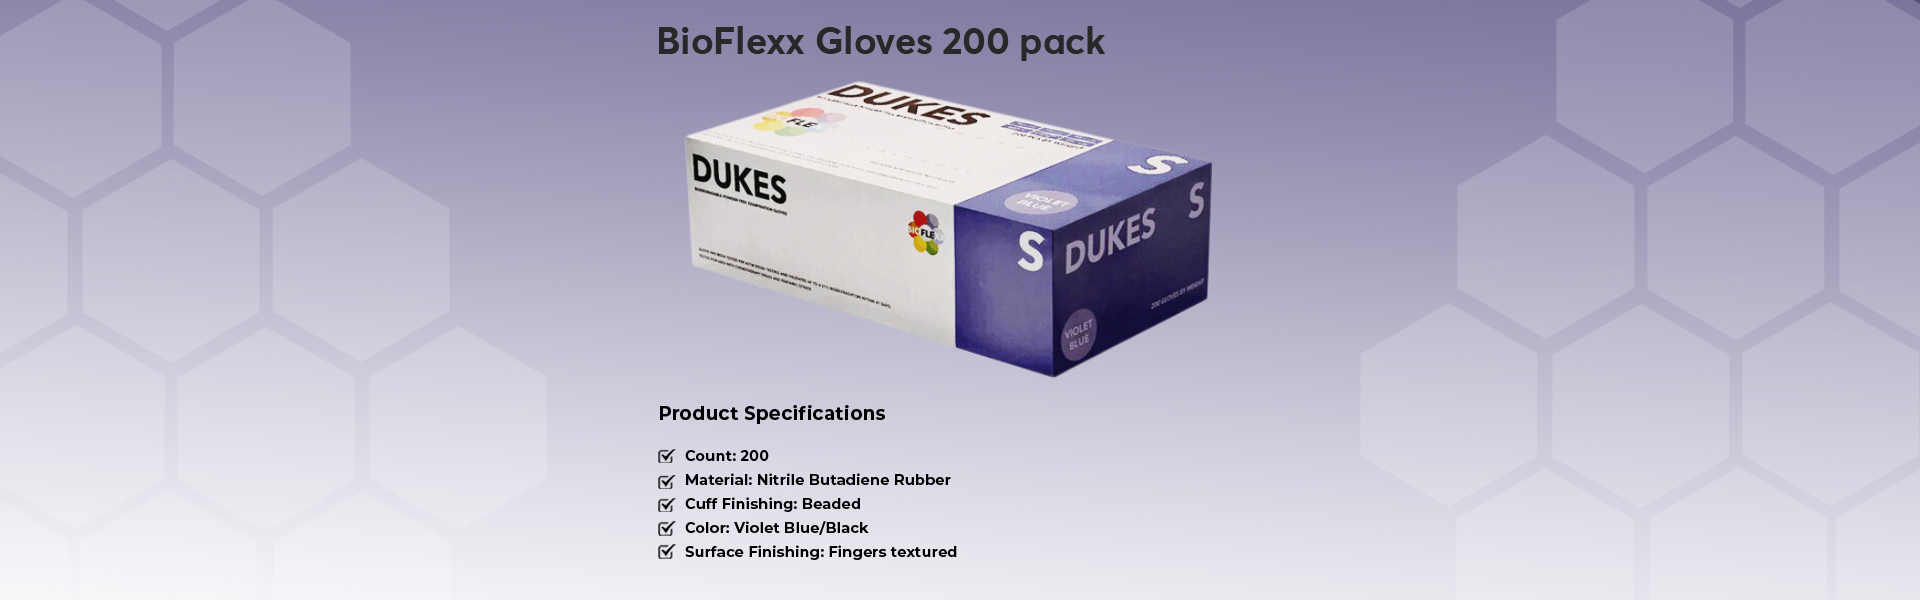 BioFlexx-Gloves-200-pack